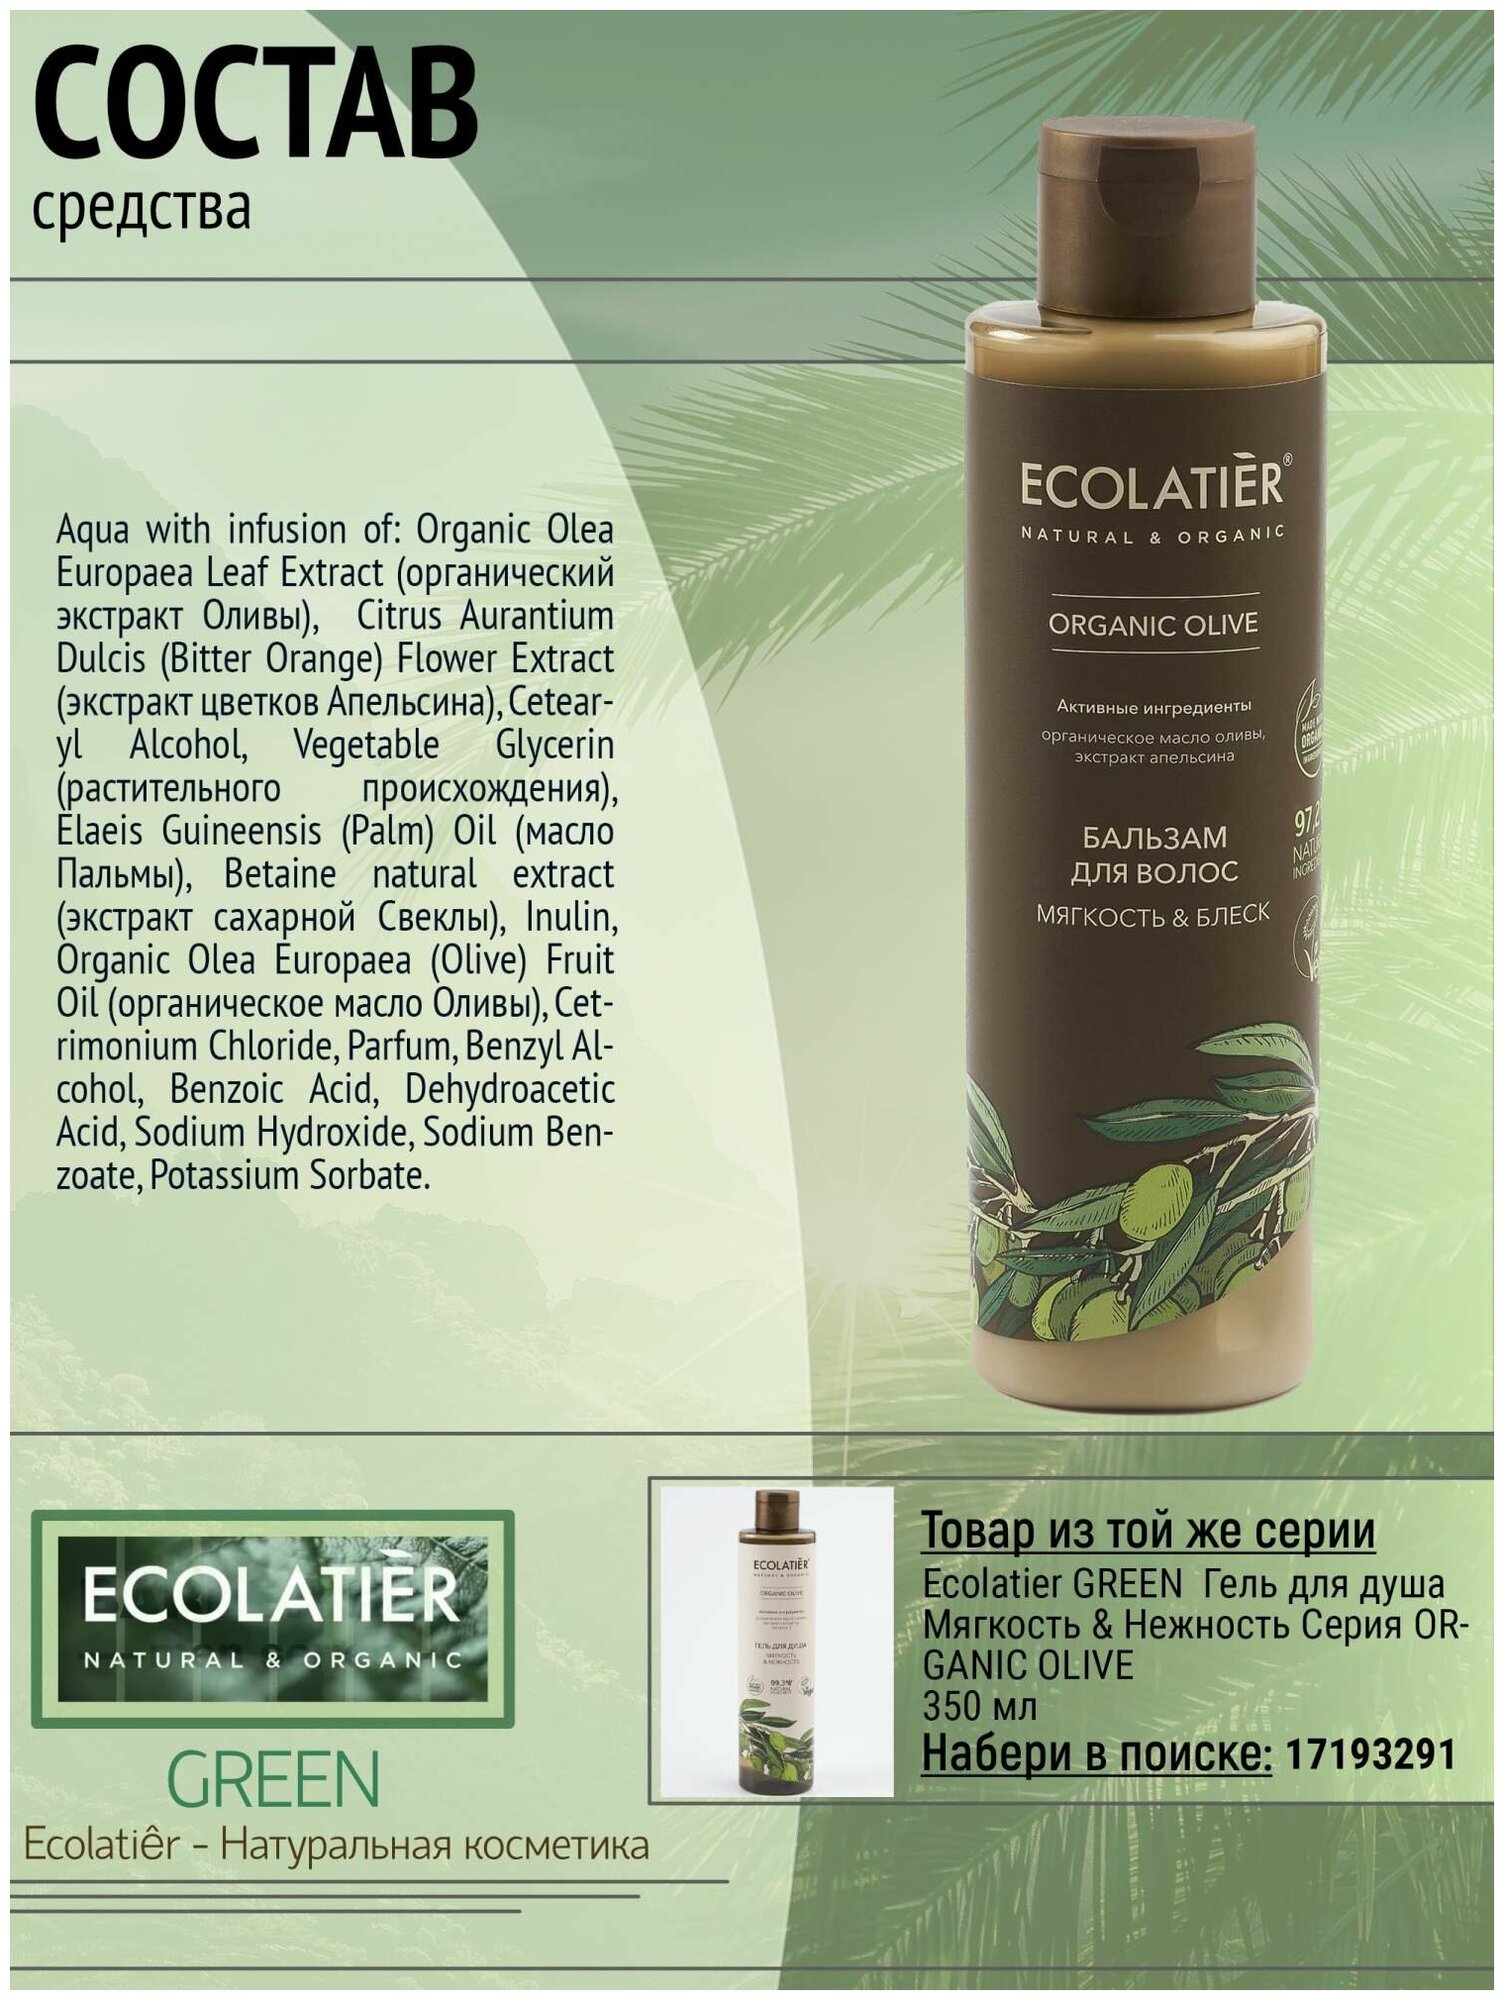 Ecolatier/GREEN Бальзам для волос Мягкость & Блеск Серия ORGANIC OLIVE, 250 мл